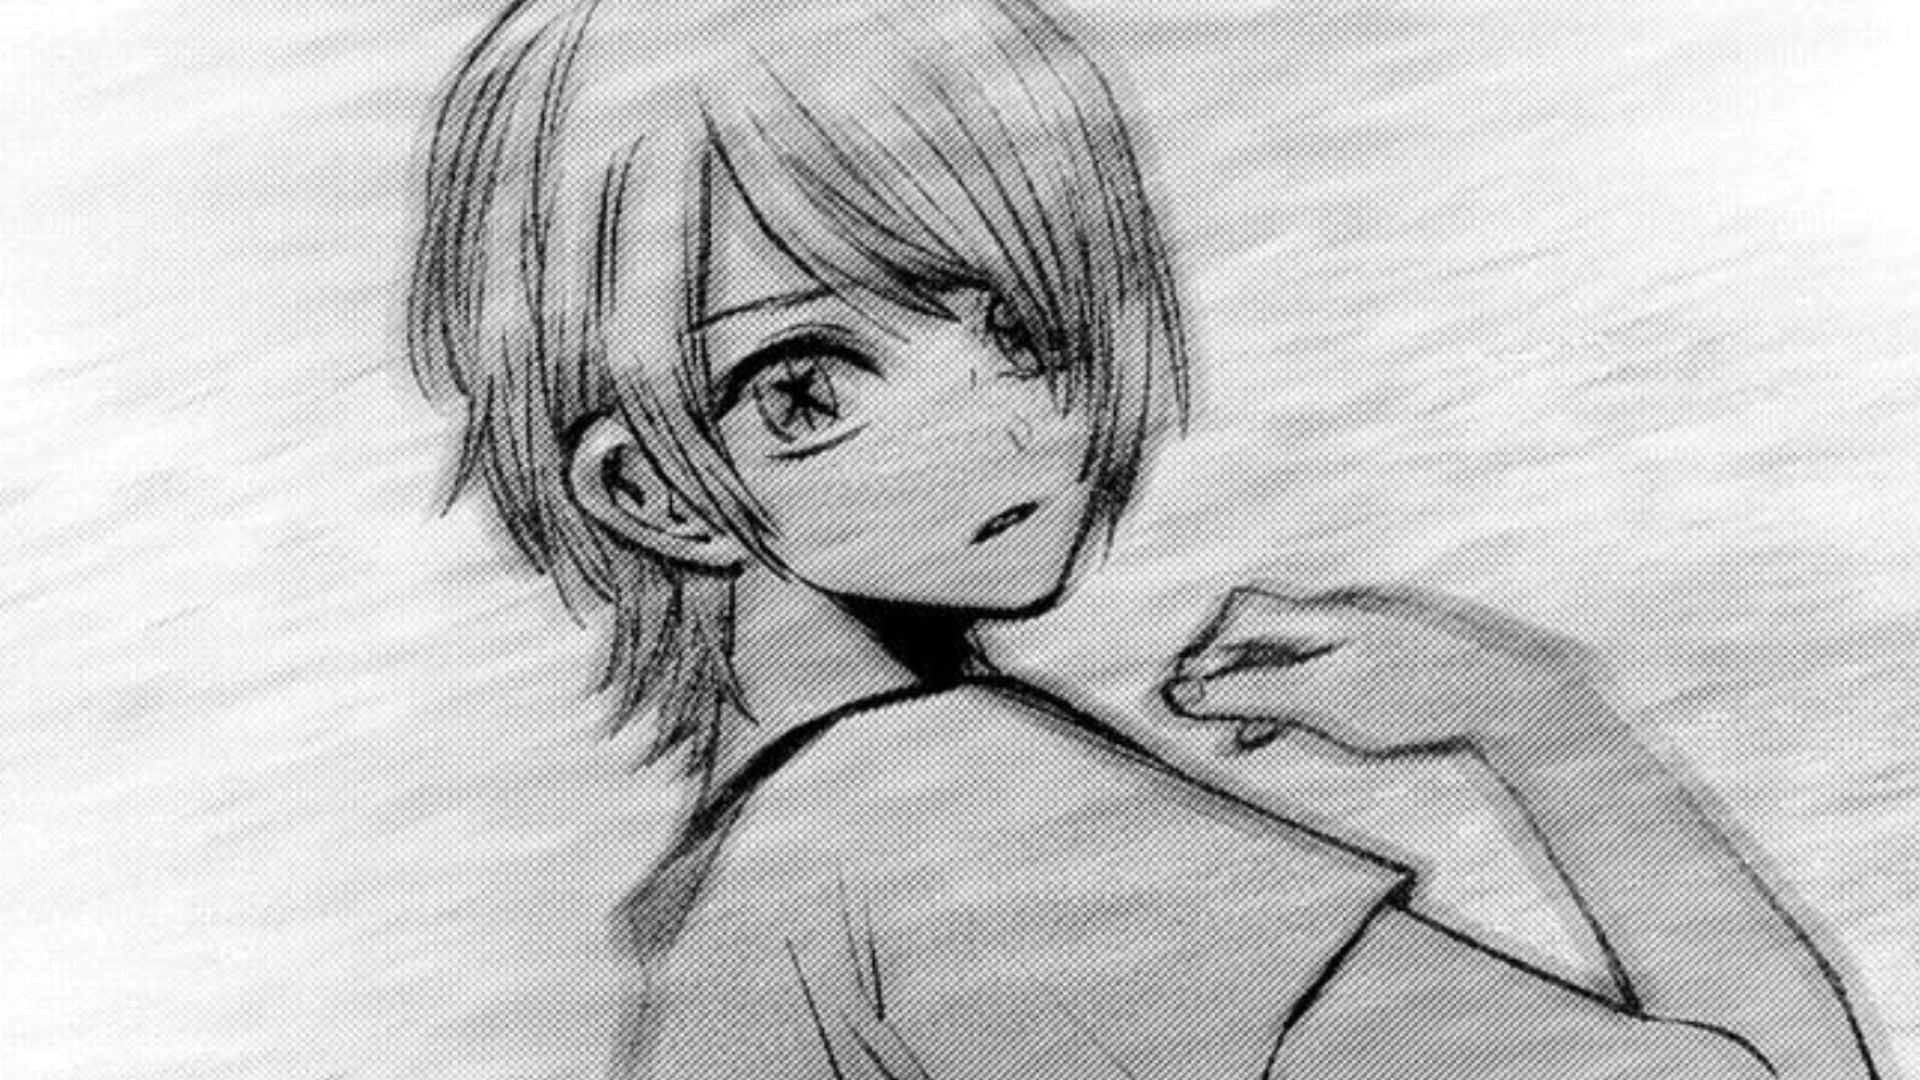 Young Hikaru as seen in the manga (Image via Shueisha)